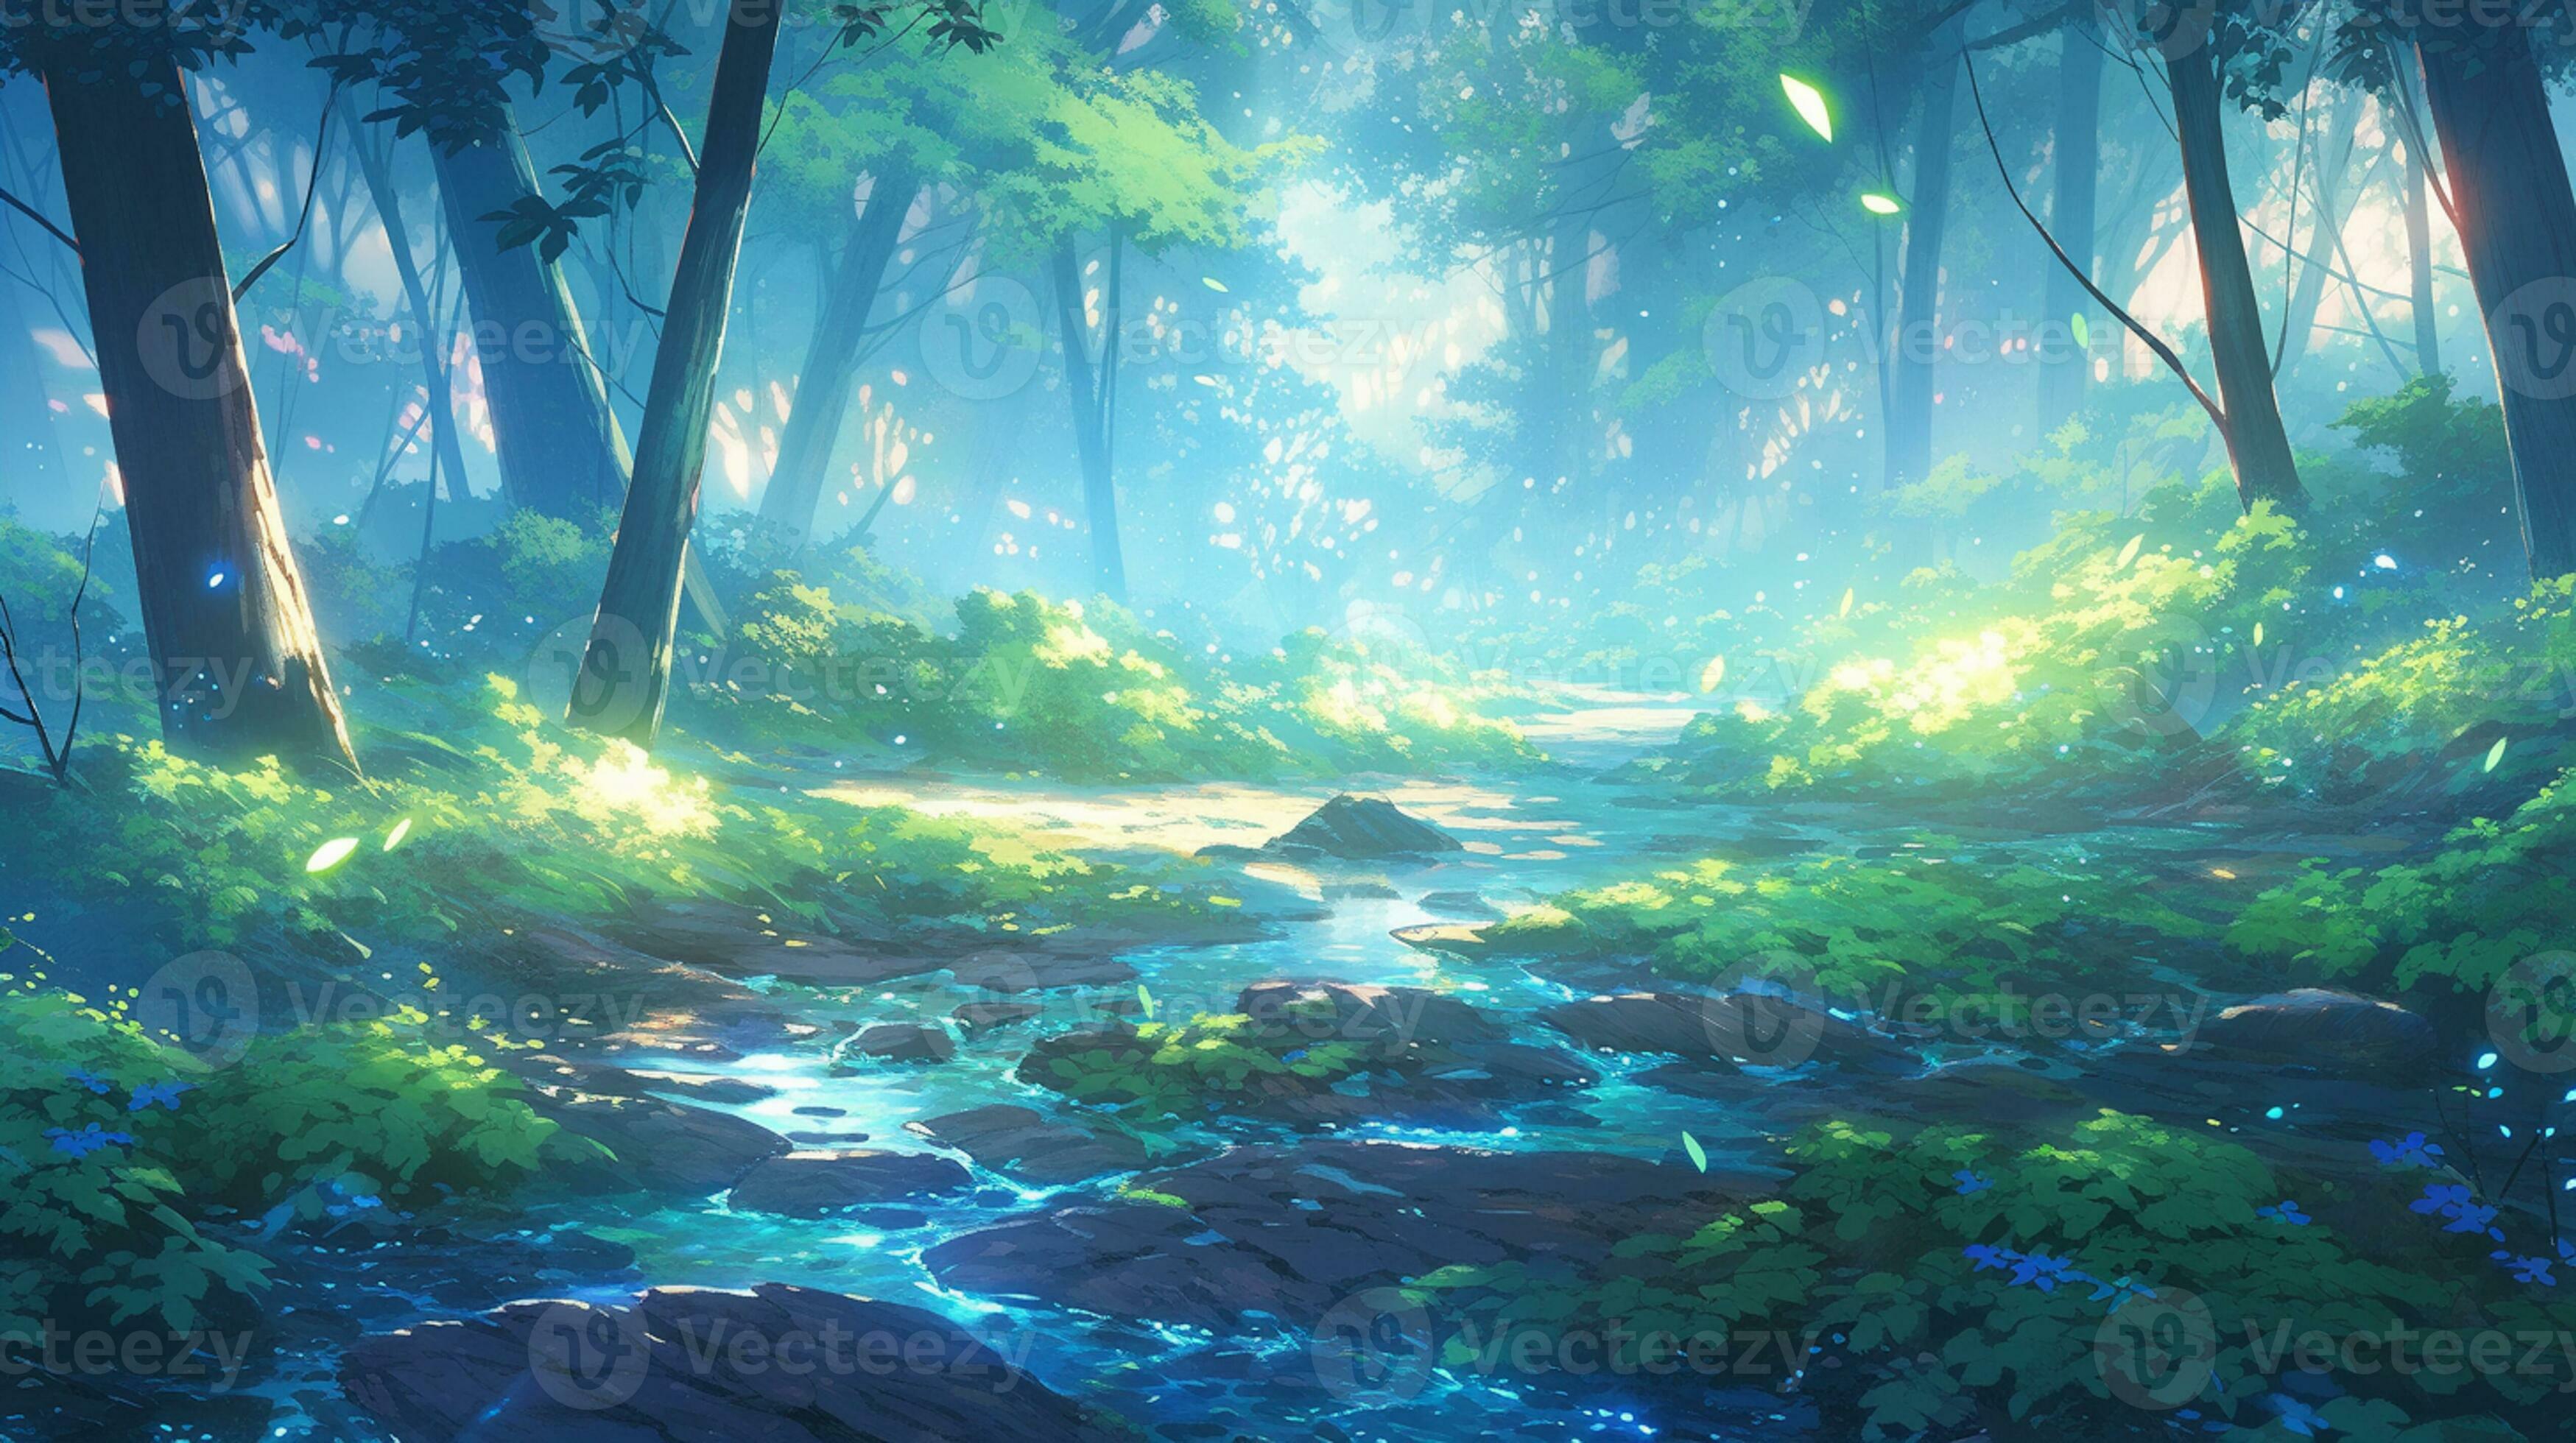 Cenário de anime de uma floresta com um caminho e um céu